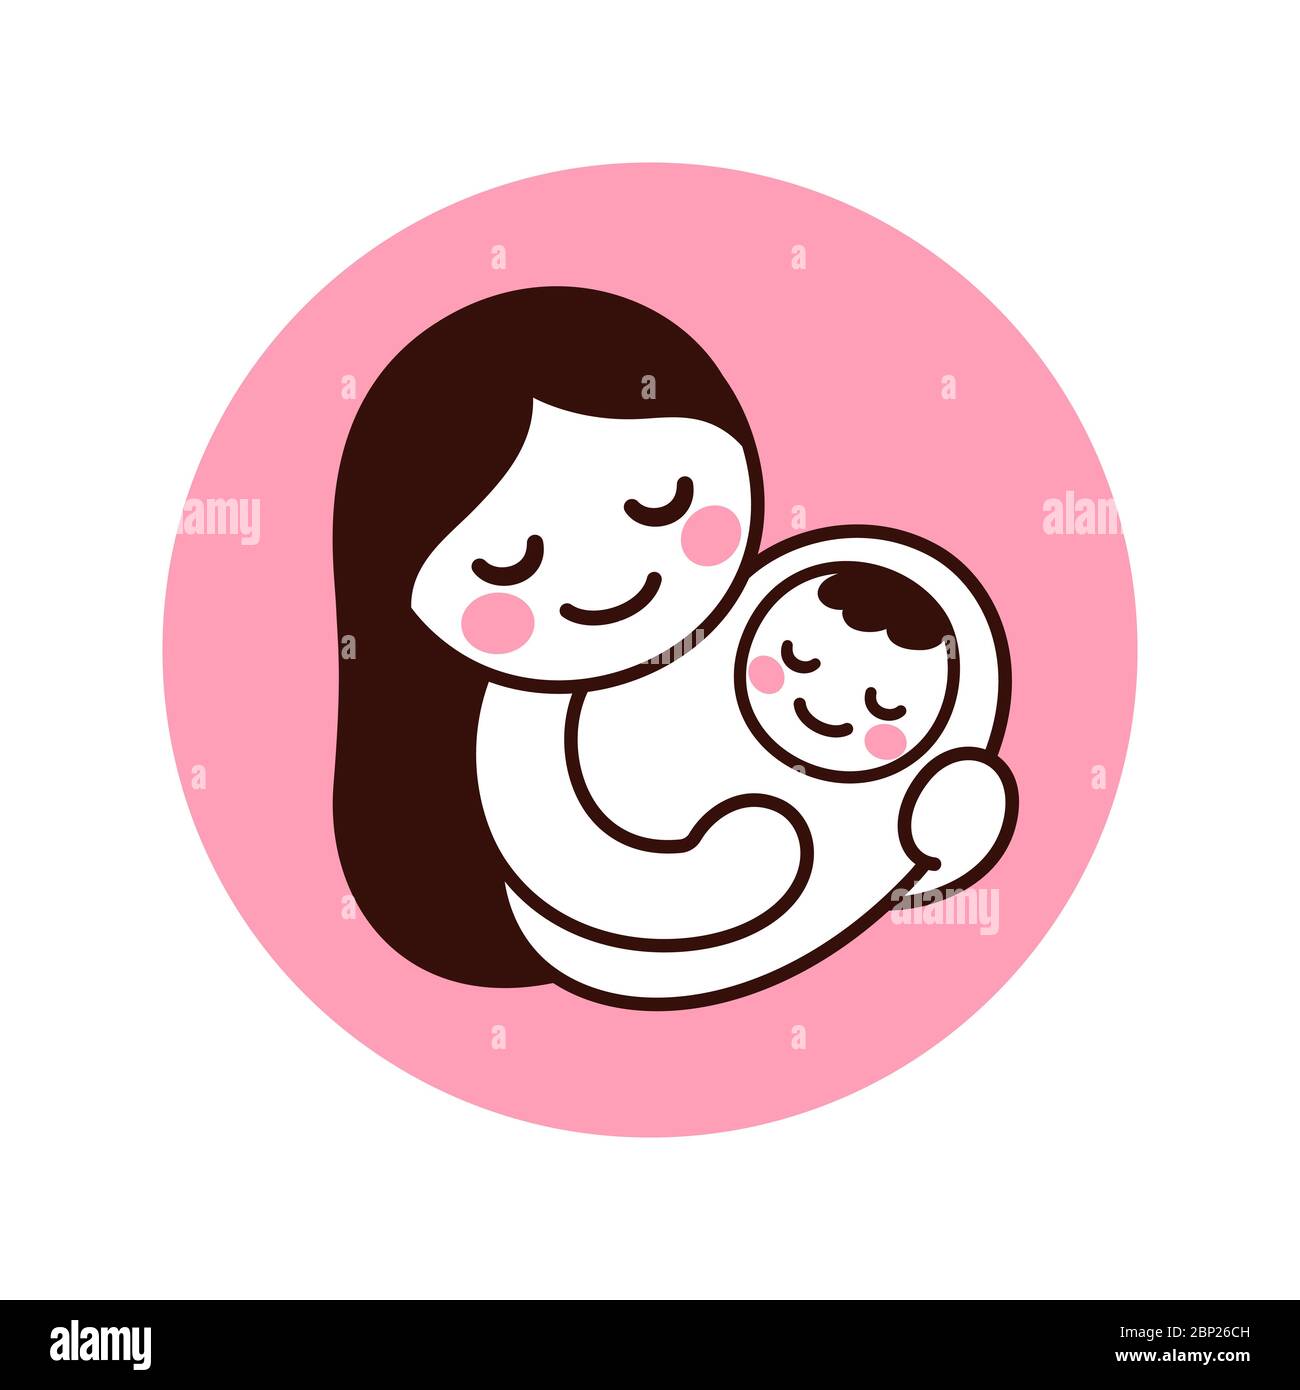 Disegno carino e semplice della mamma che tiene il bambino. Dentello disegnato a mano di donna con il neonato. Illustrazione di clip vettoriali isolate. Illustrazione Vettoriale